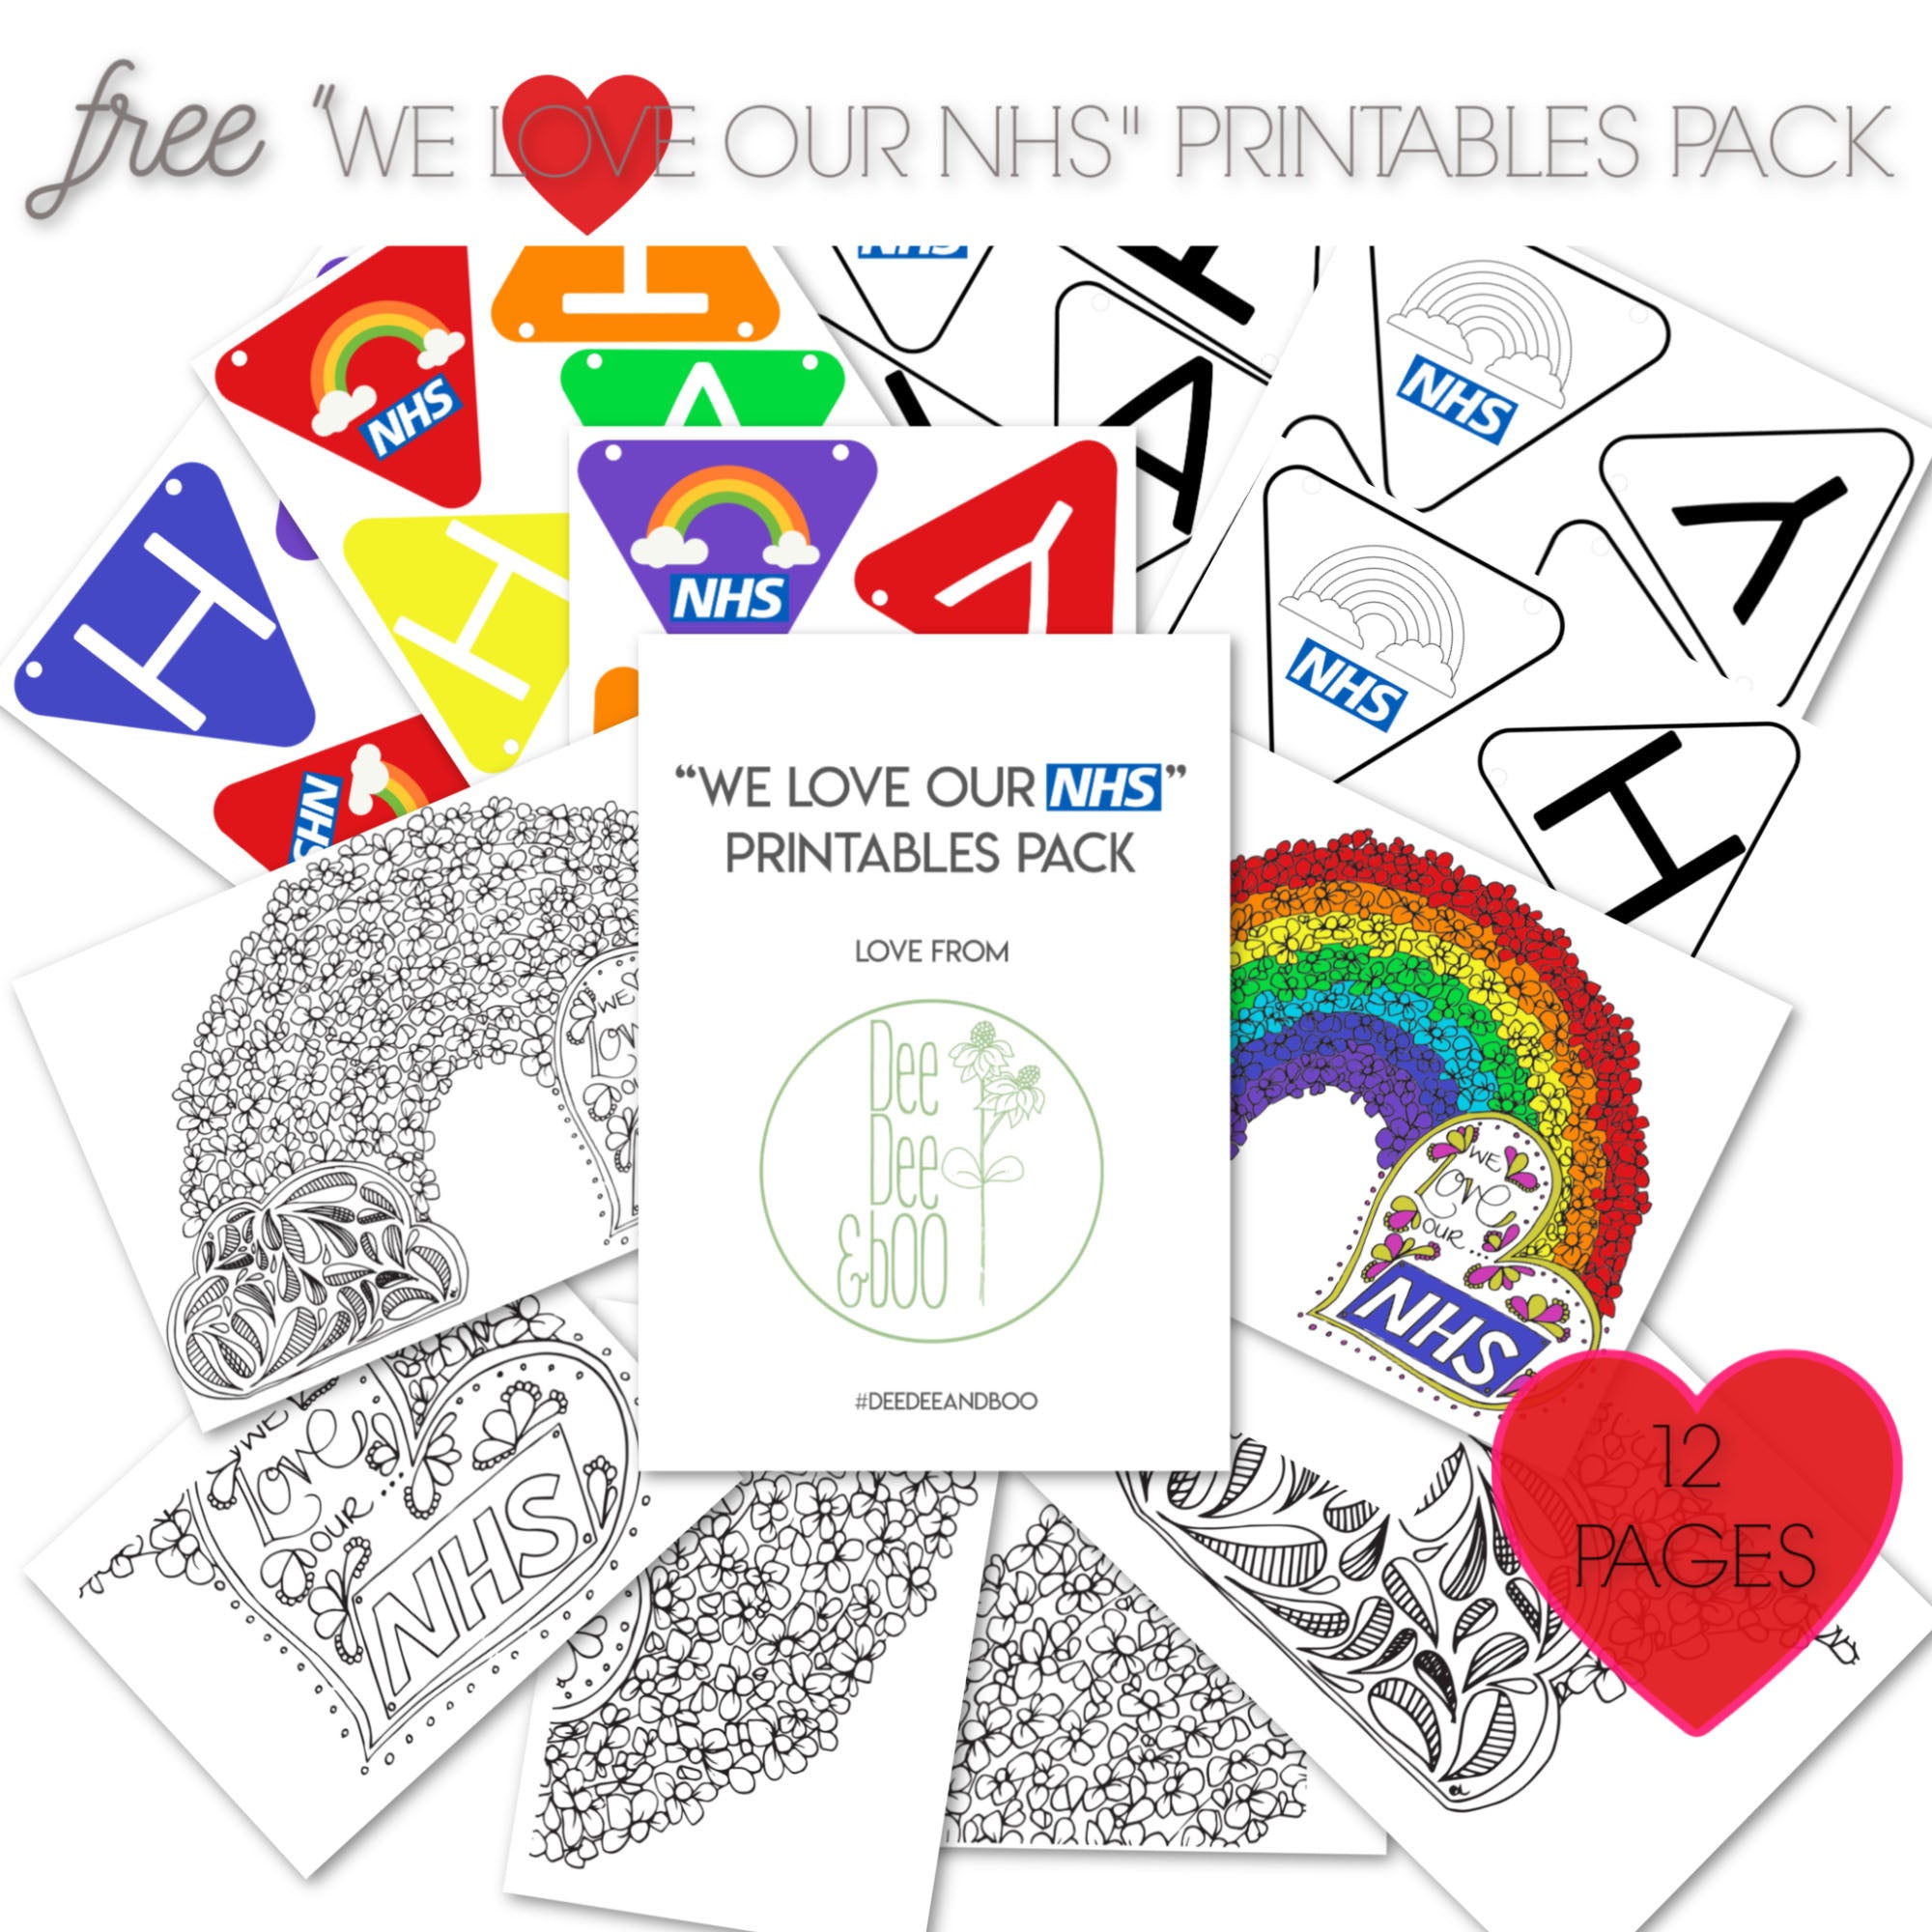 Free "We love our NHS" printables pack